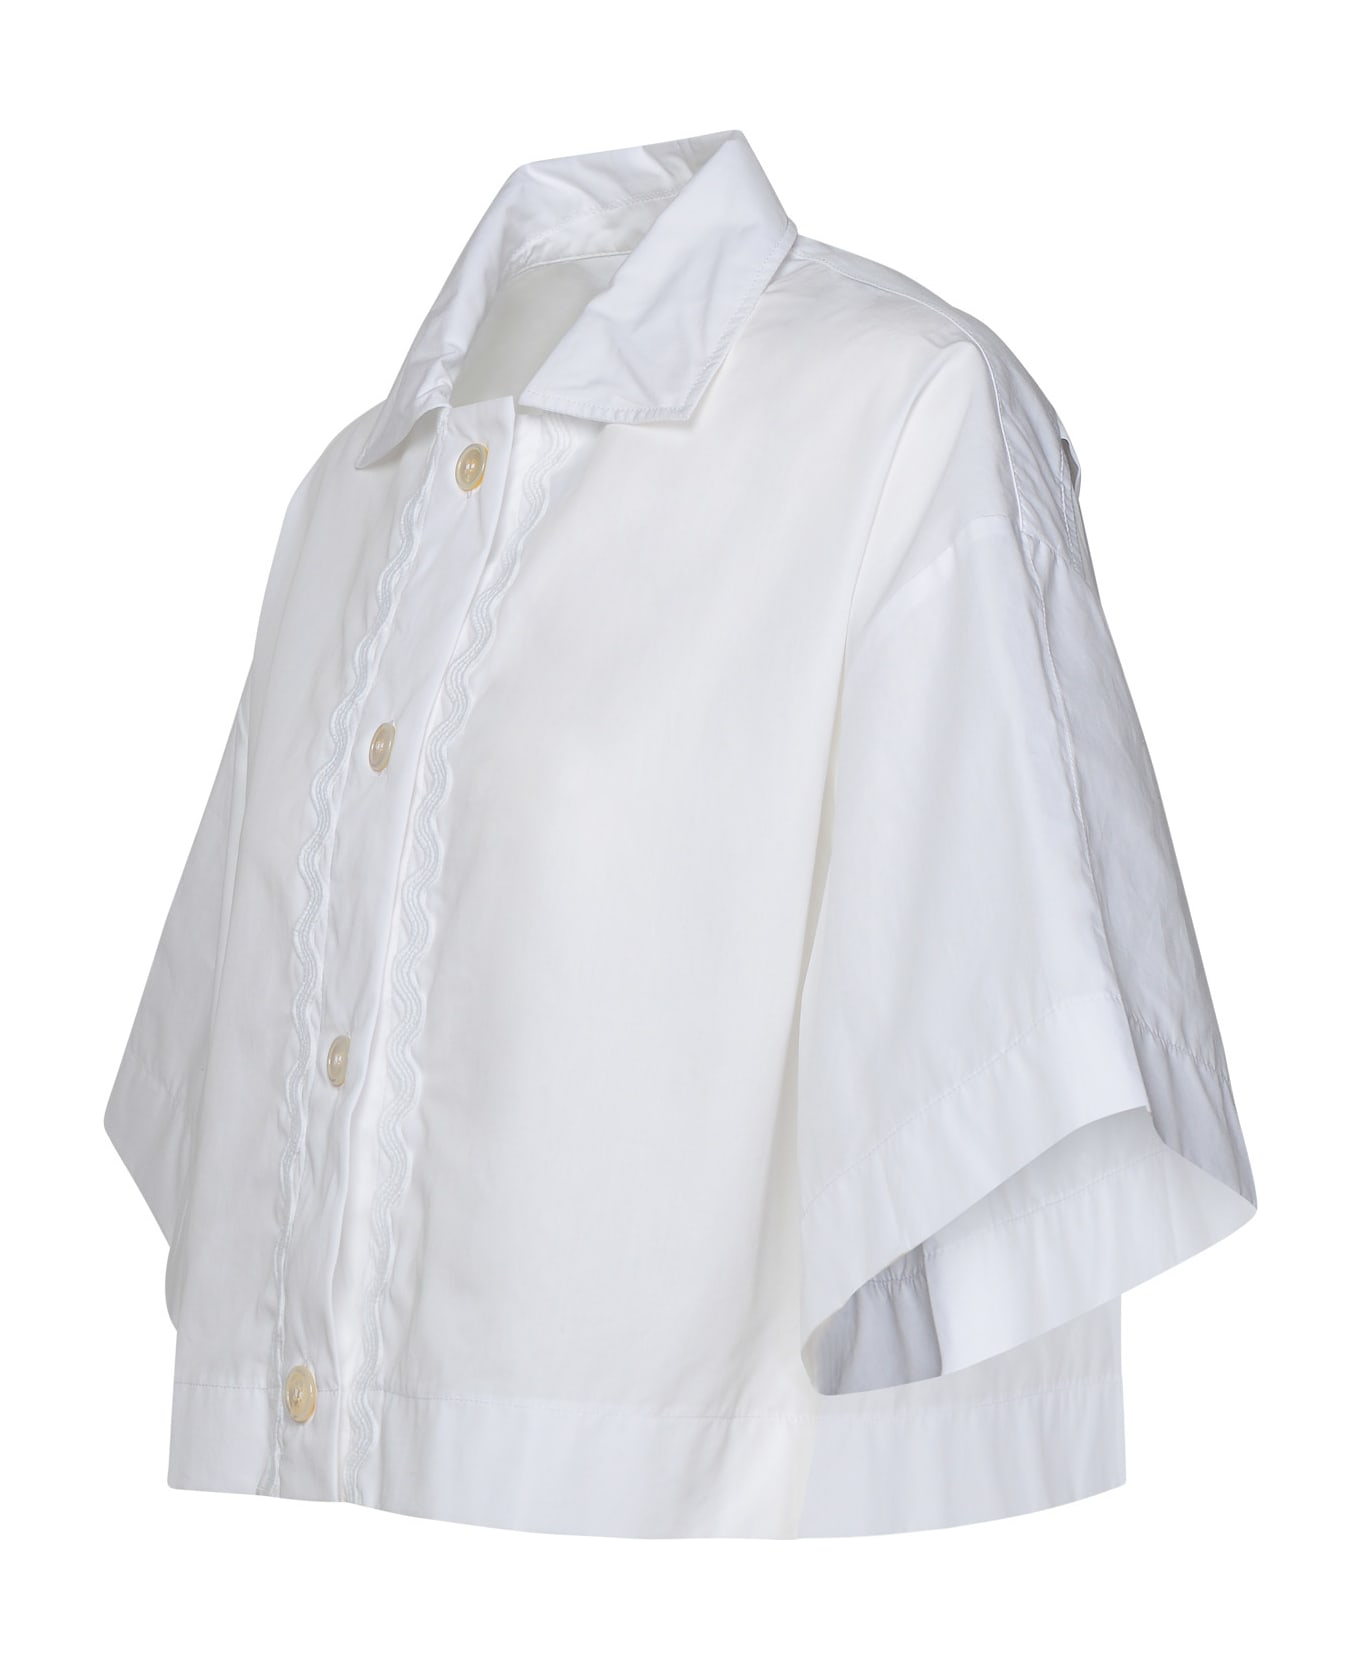 Patou Crop Shirt In White Cotton - Bianco